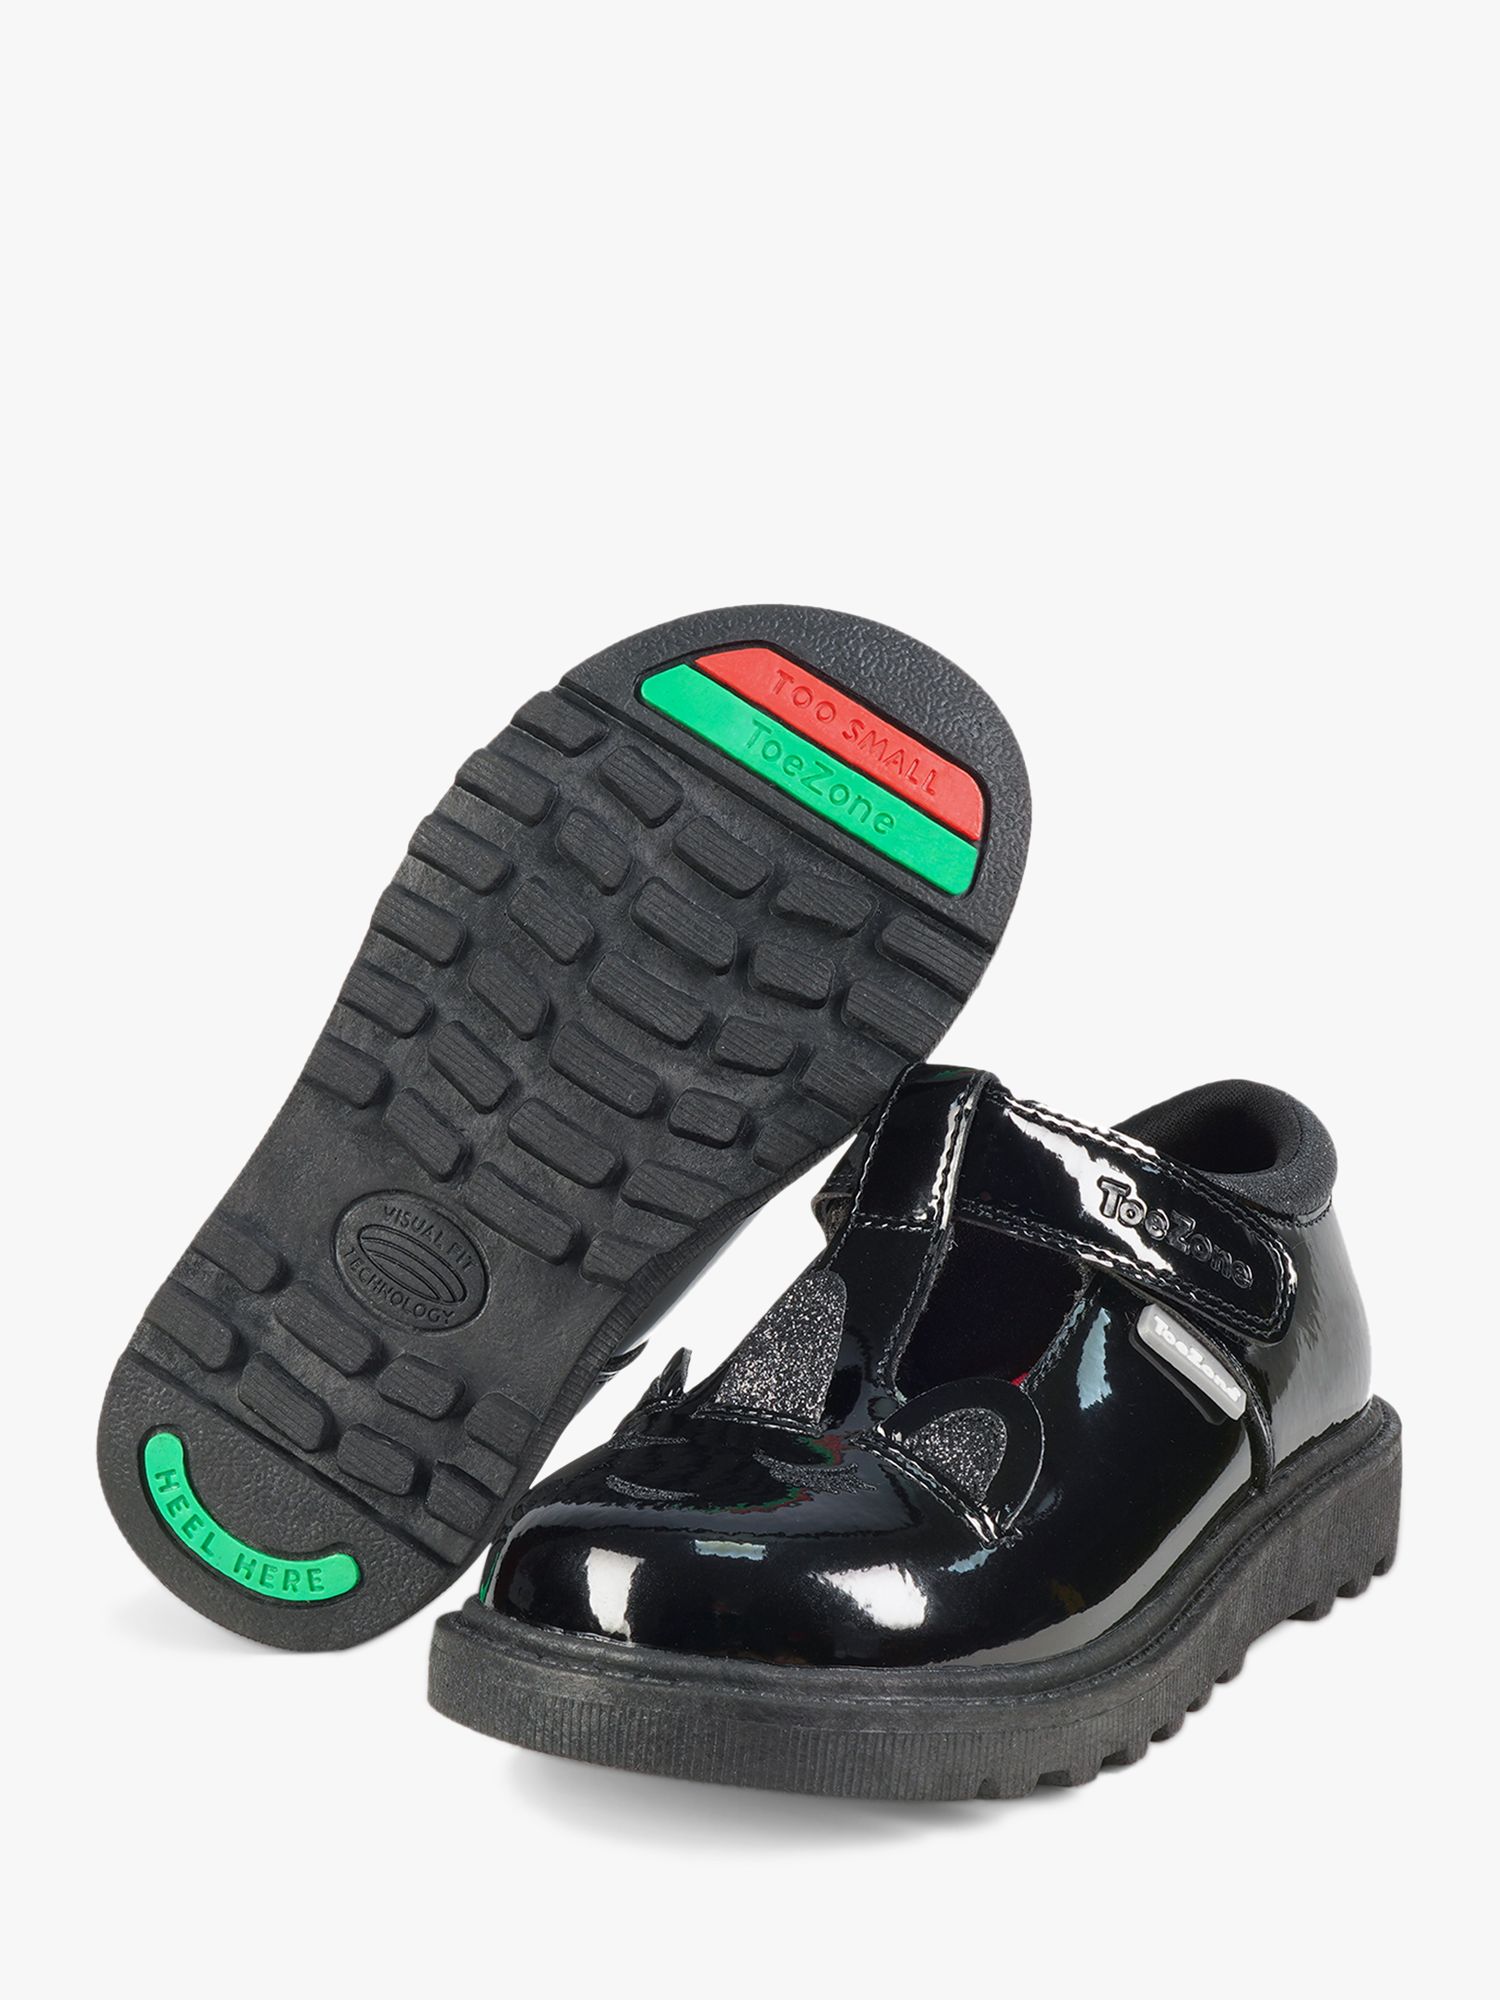 ToeZone Kid's Millie Patent Leather Unicorn School Shoes, Black, 8 Jnr